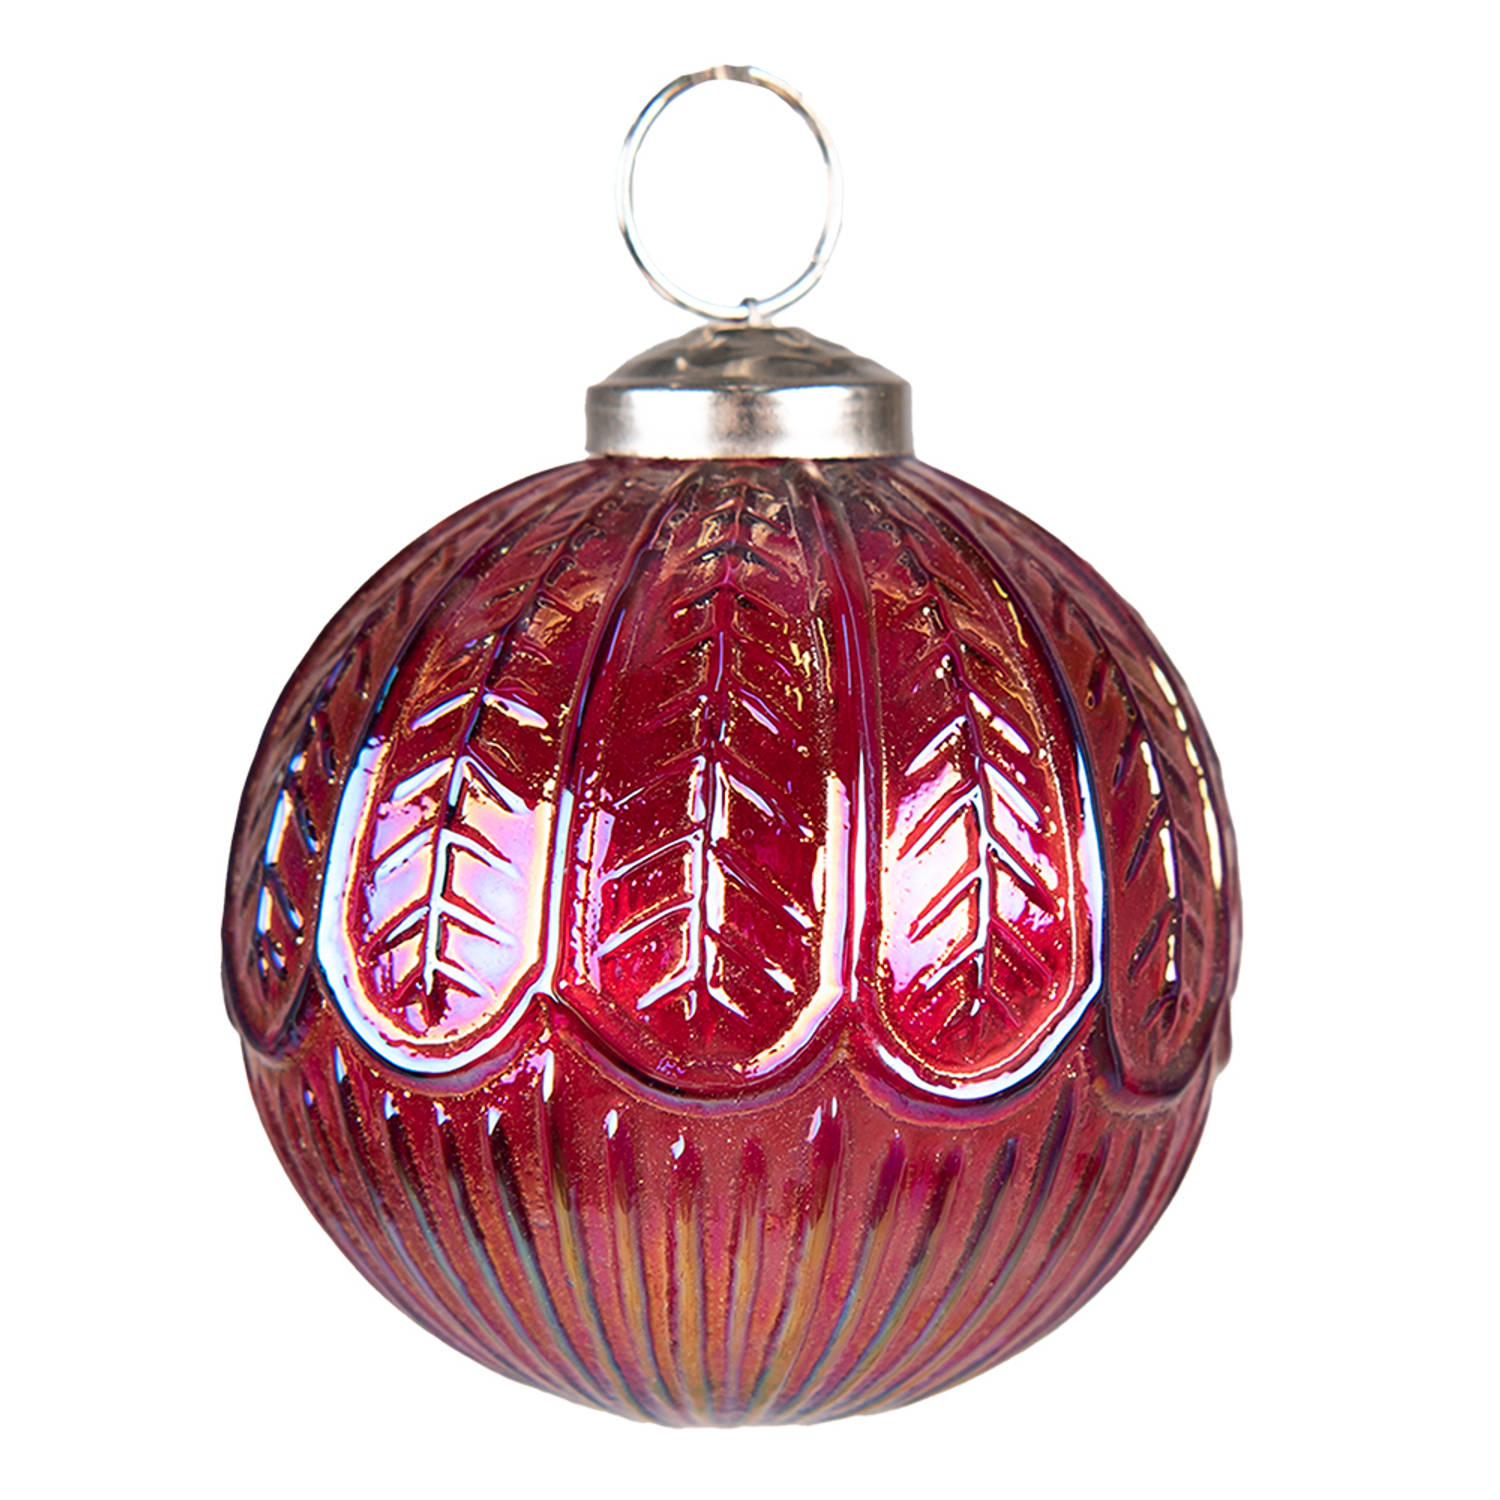 HAES DECO - Kerstbal - Formaat Ø 7x7 cm - Kleur Rood - Materiaal Glas - Kerstversiering, Kerstdecoratie, Decoratie Hanger, Kerstboomversiering